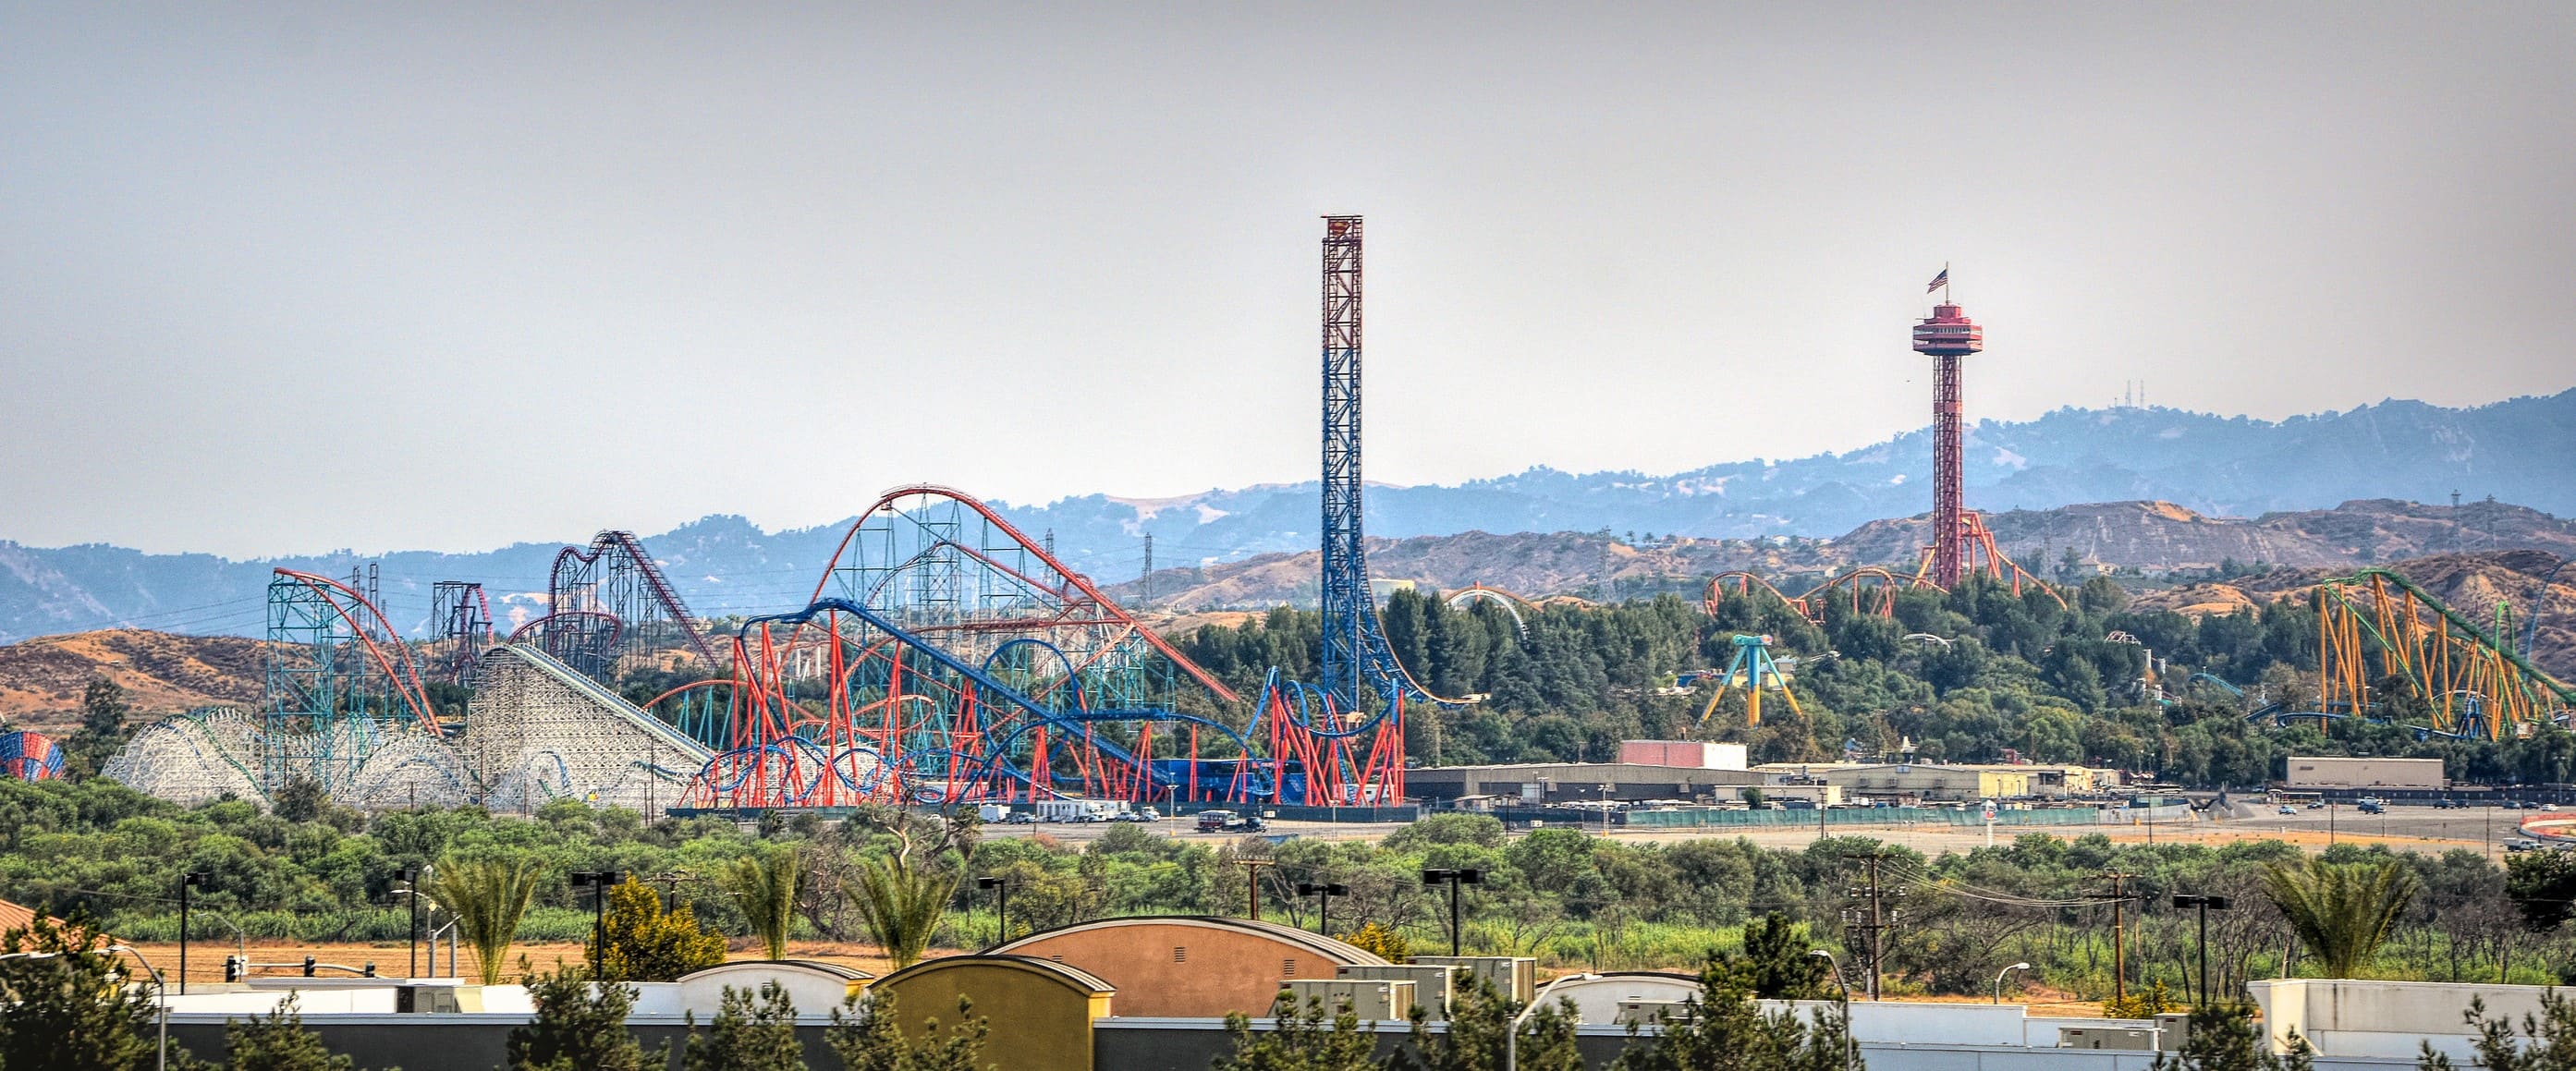 Самые лучшие парки развлечений в мире - Six Flags Magic Mountain